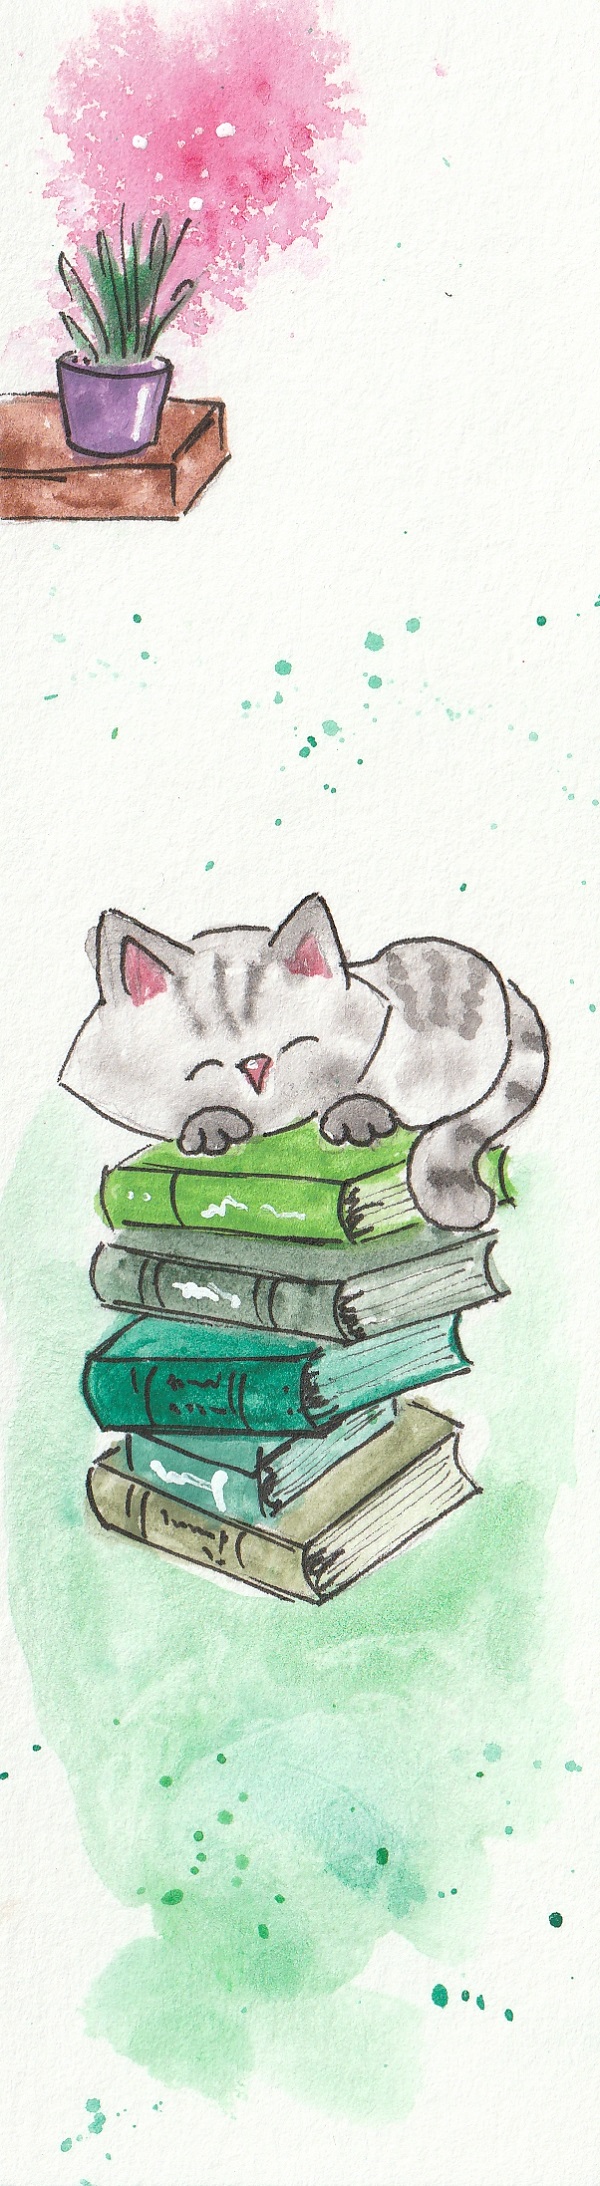 Semn de carte: Pisica pe carti